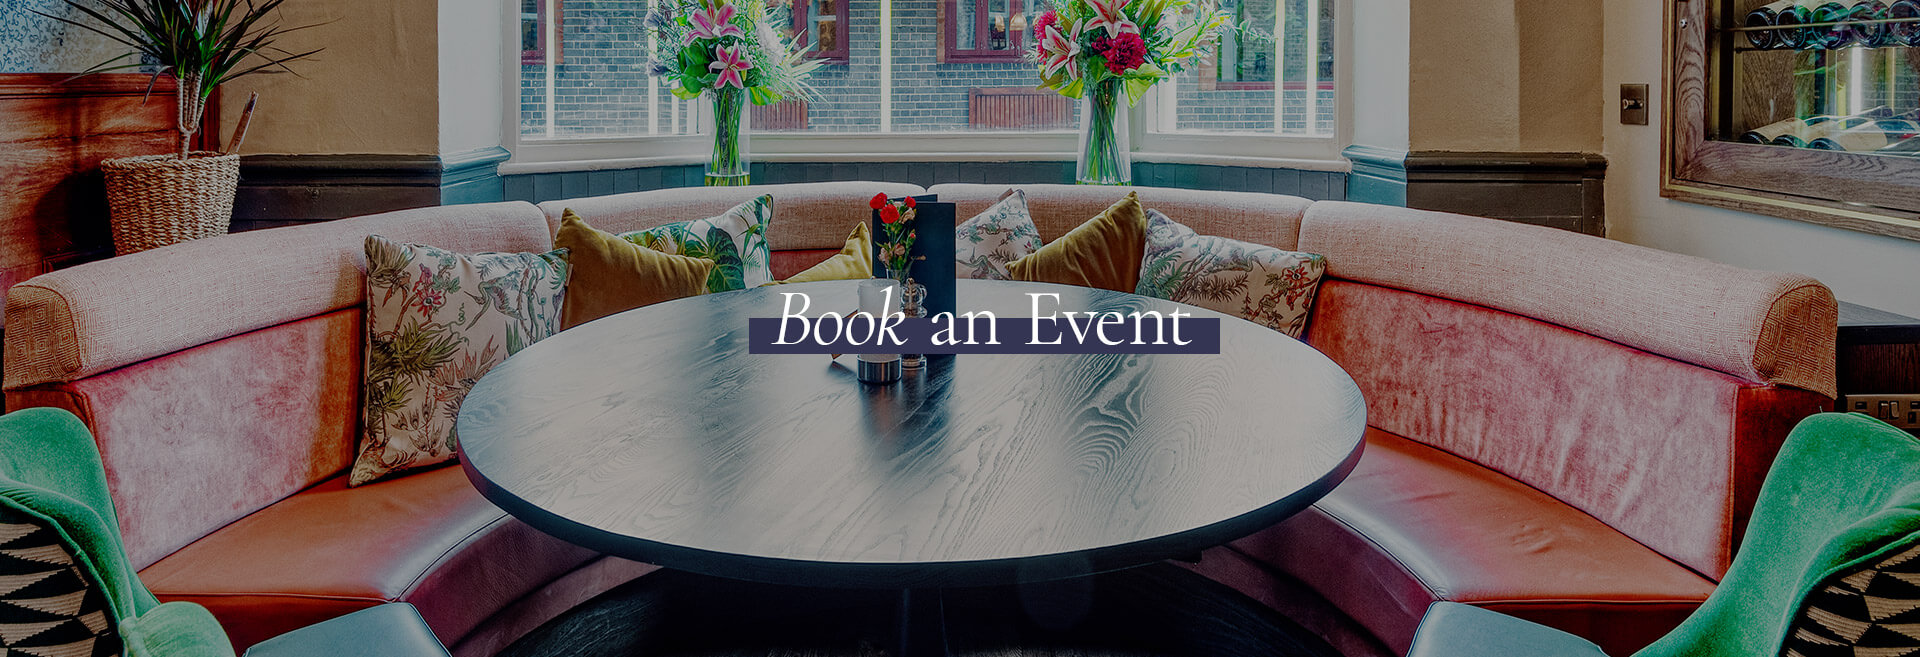 Book An Event